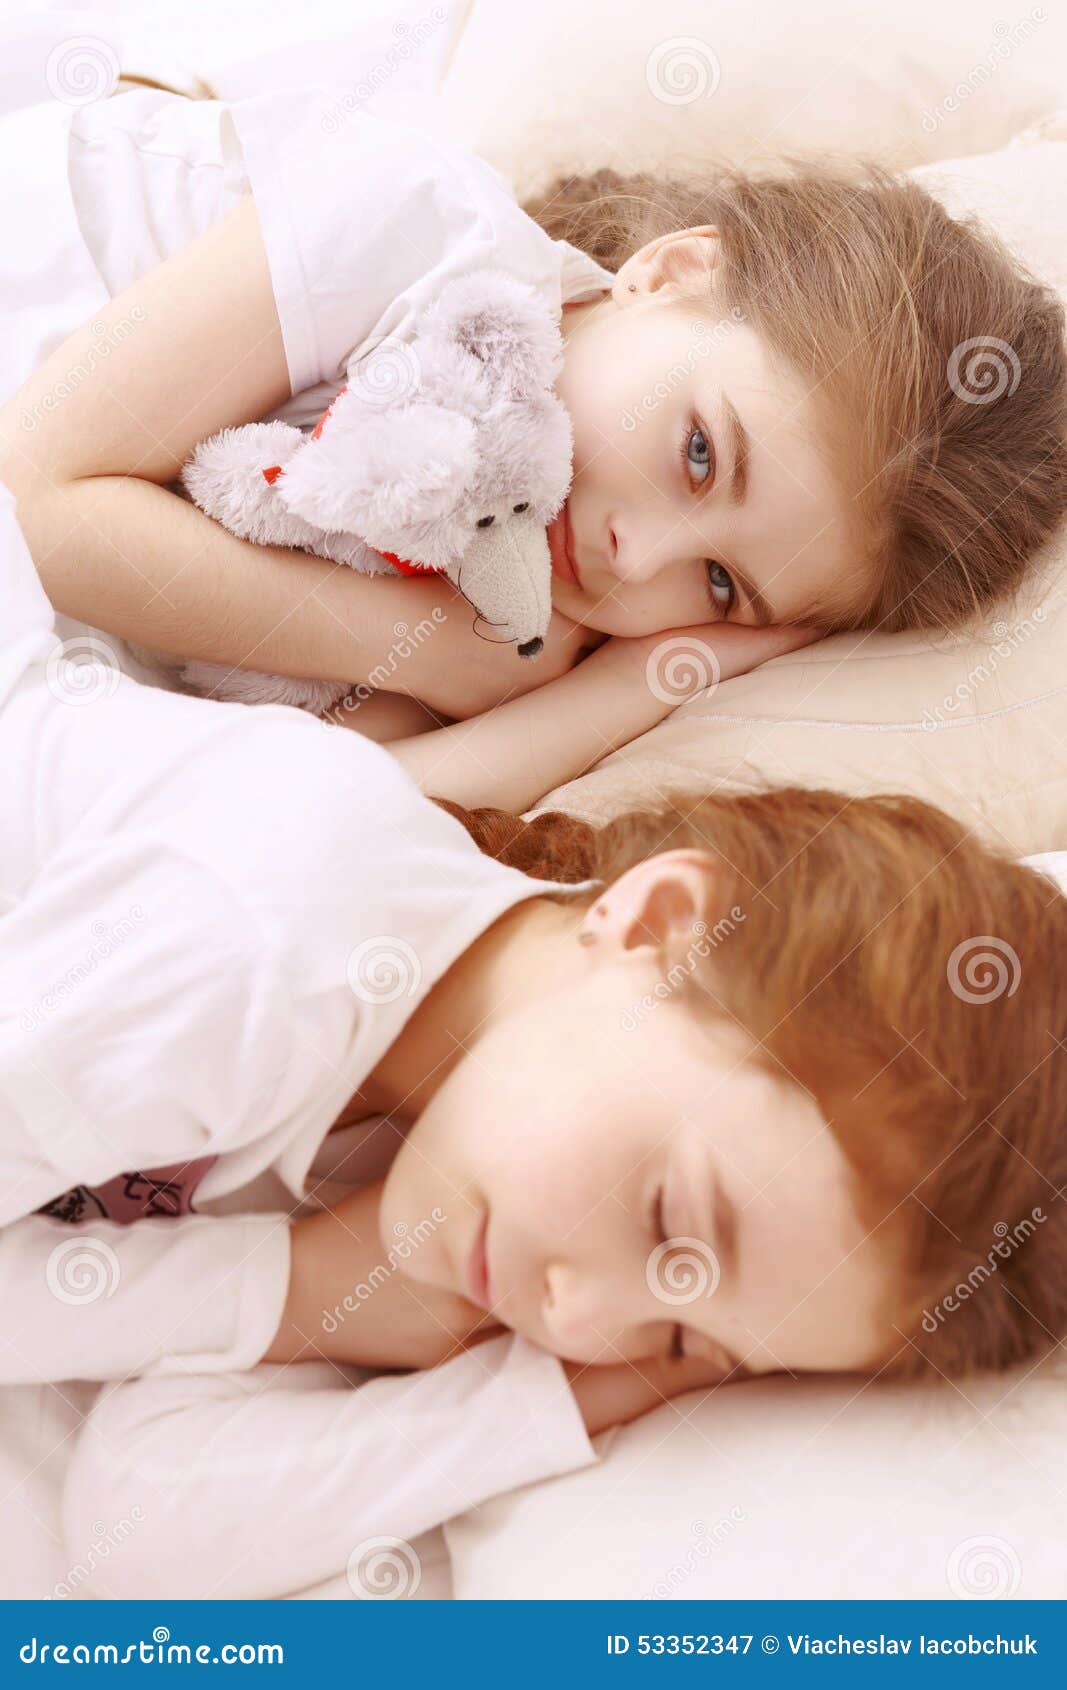 Girl cute young sleeping teen